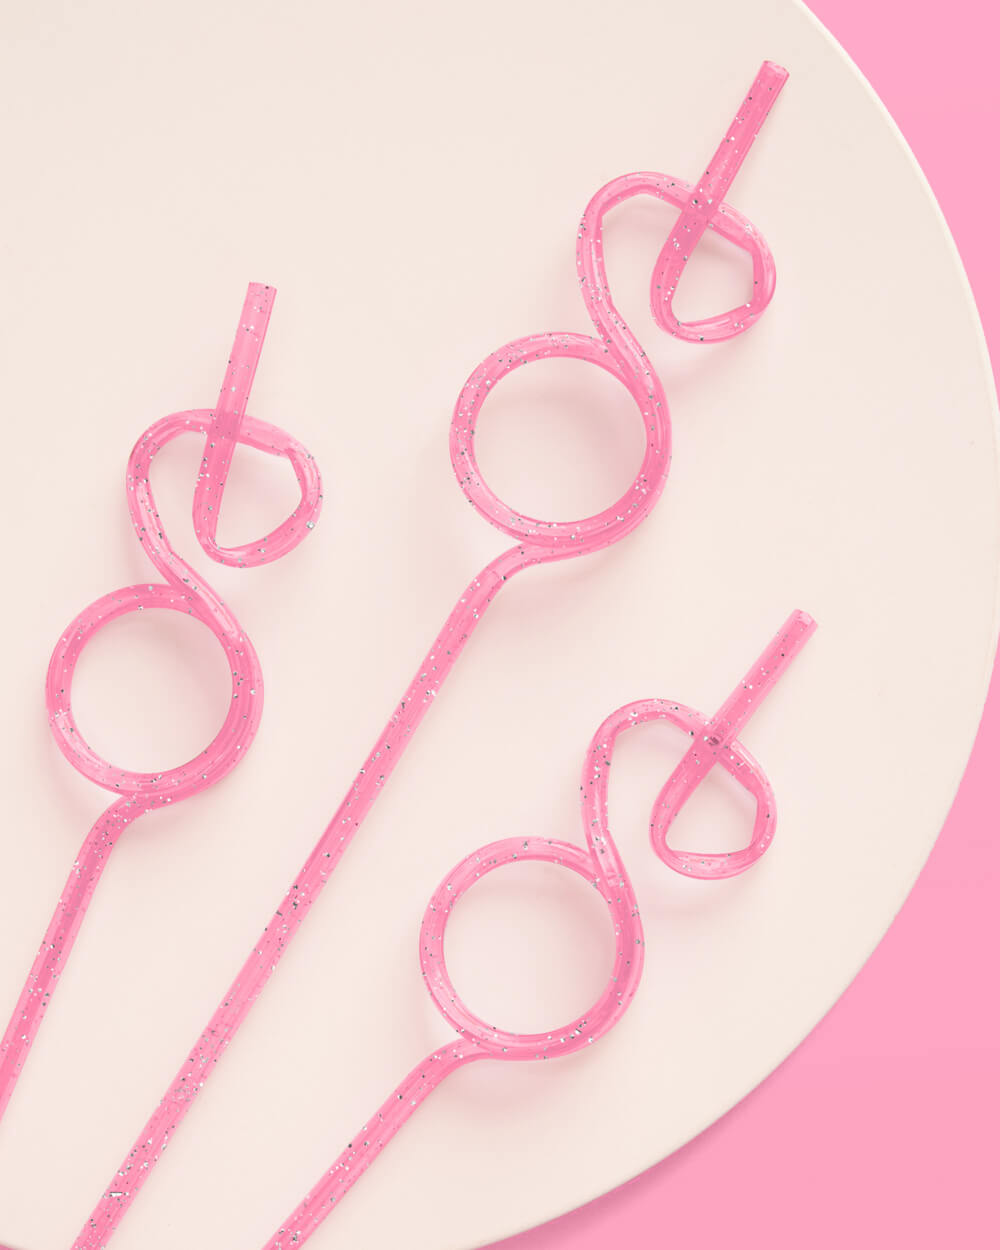 Bling Ring Straws - 16 reusable straws